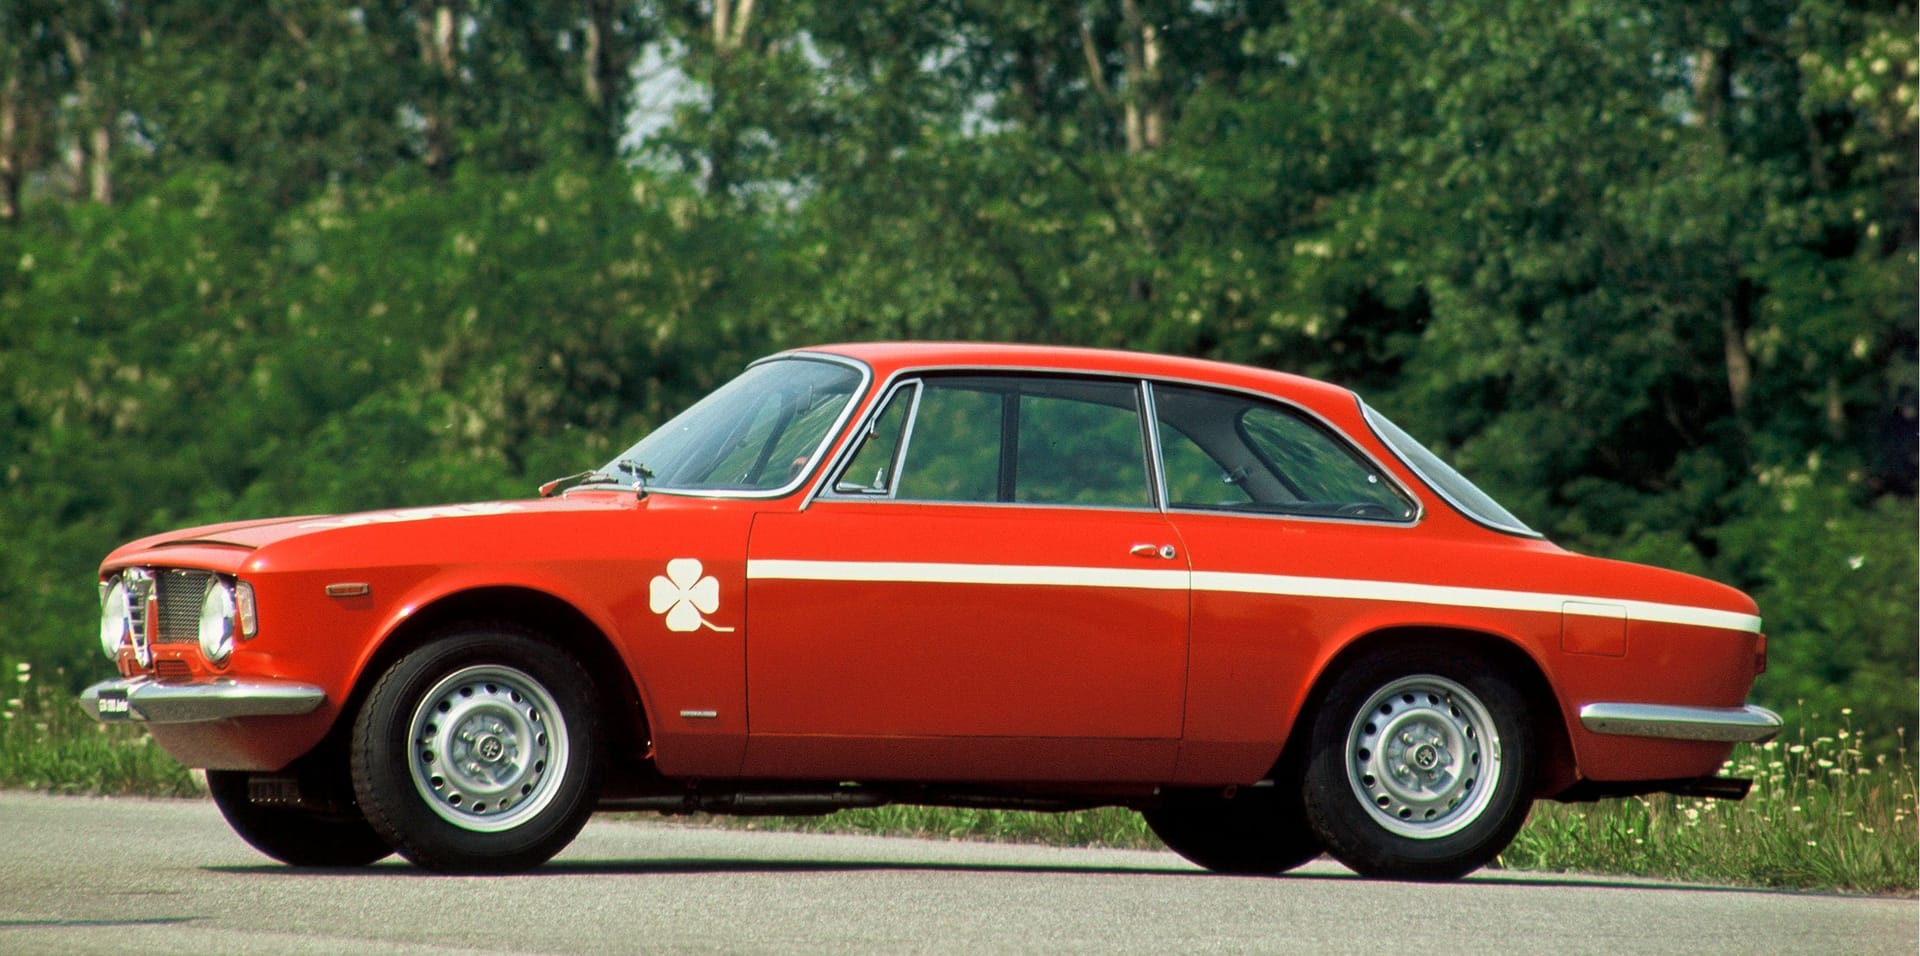 Namensvorbild: Alfa Romeo Giulia Coupé 1300 GTA Junior (1968 bis 1975) und weitere Modelle trugen ab den Sechzigerjahren bereits den Zusatz "Junior".